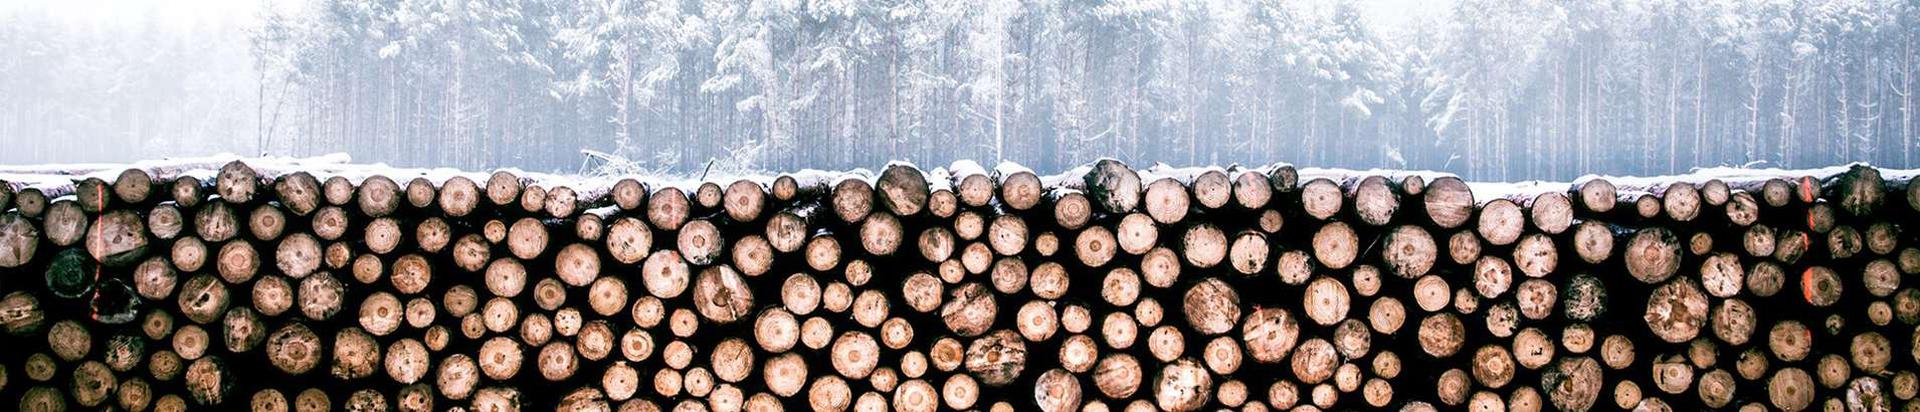 Kvaliteetne puitmaterjal otse Eestist. Meilt saad immutatud puitu, terrassilaudu, saunamaterjali ja kõike muud ehitusmaterjali.